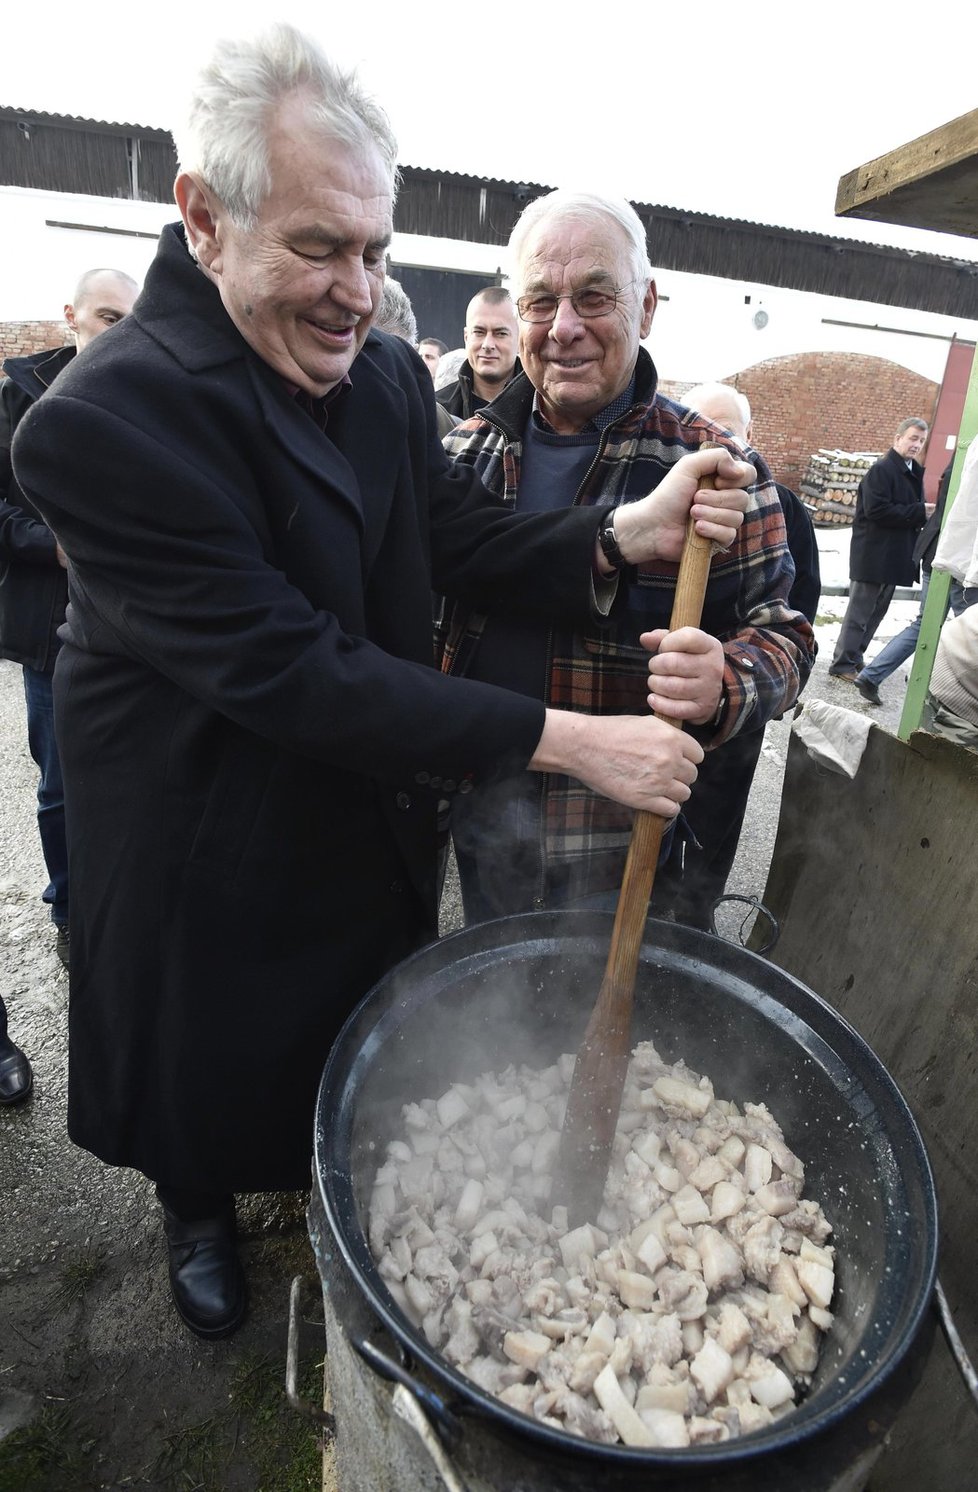 Prezident Miloš Zeman na zabijačce s bývalými členy své vlády na statku exministra zemědělství Jana Fencla